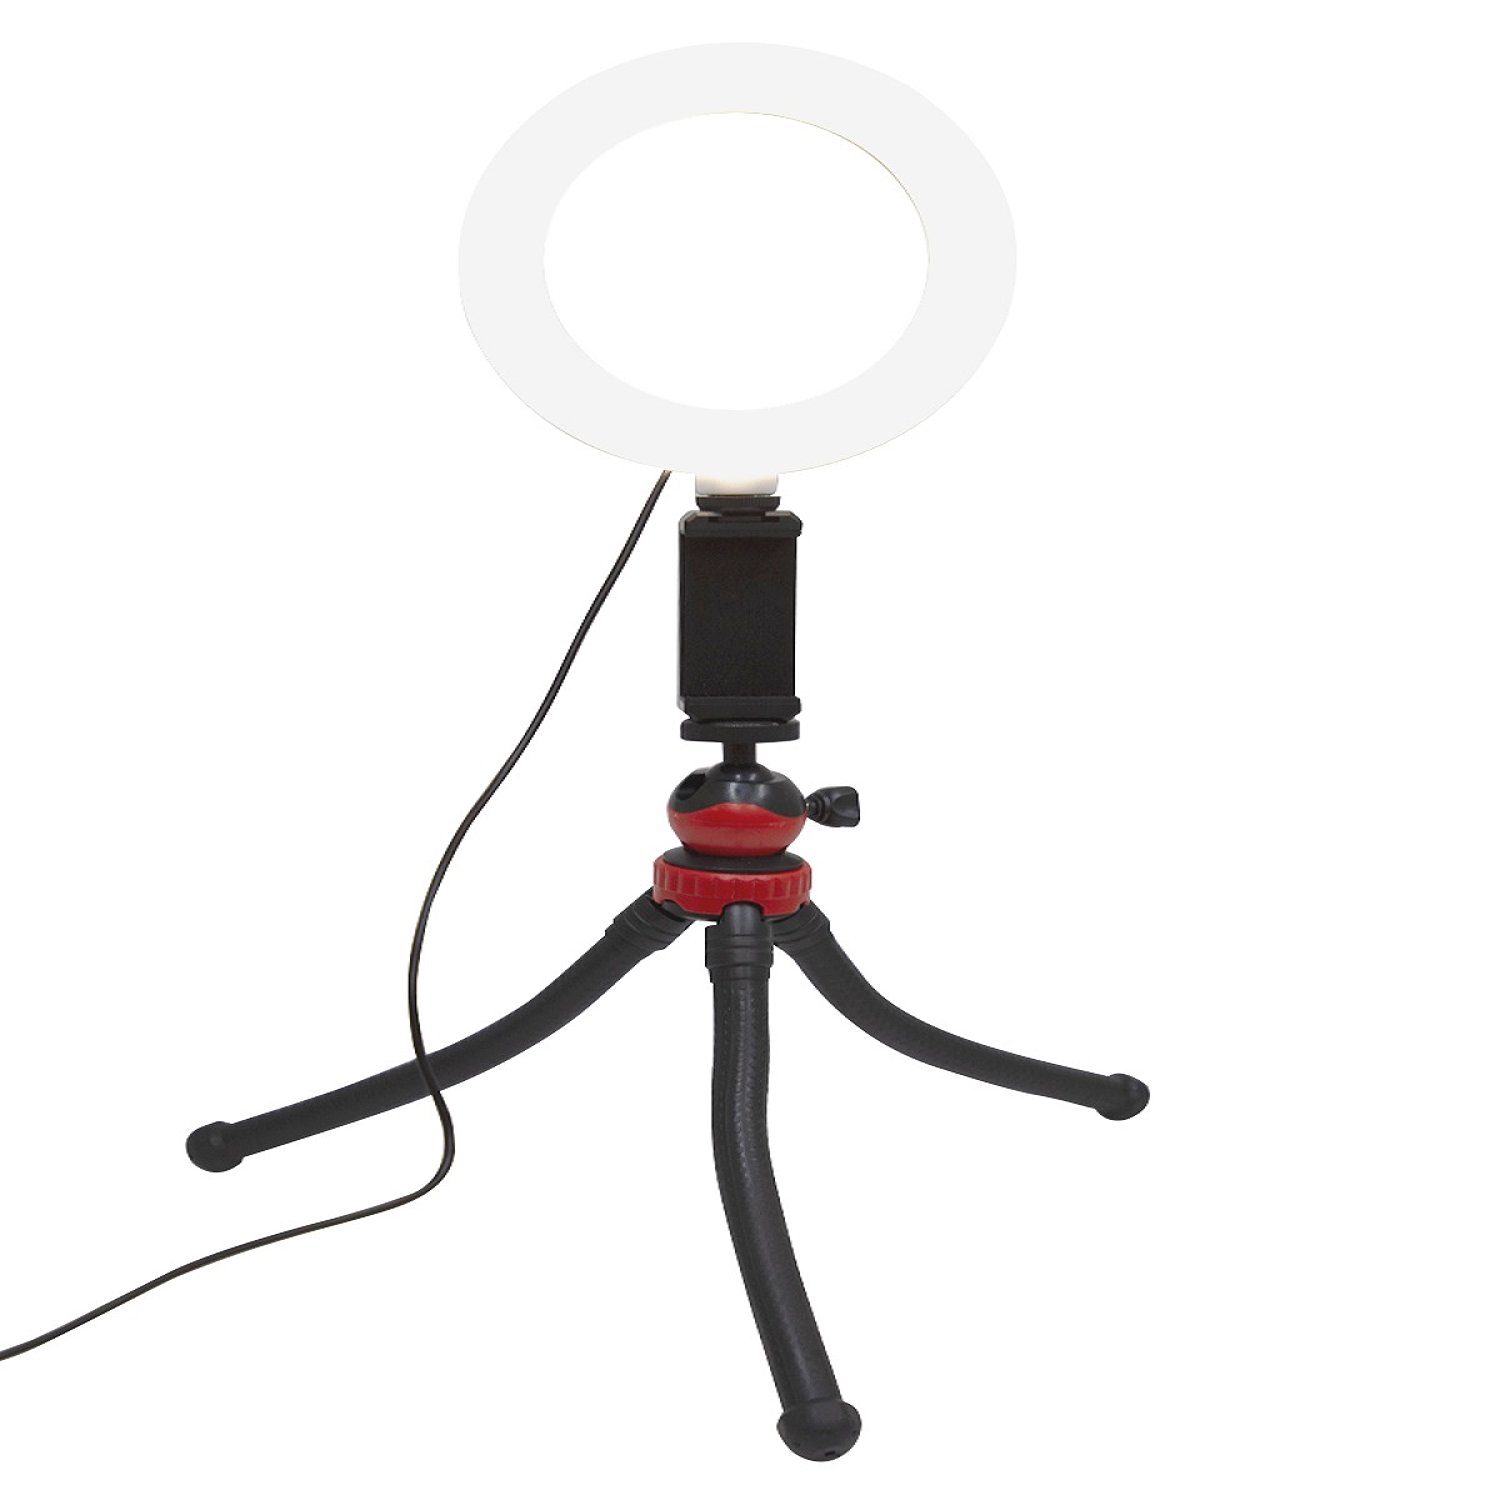 Трипод-осьминог mb mobility MRL-6 с LED светильником, черный штатив трипод для телефона mb mobility mrl 5 с кольцевой лампой черный red line 7810334